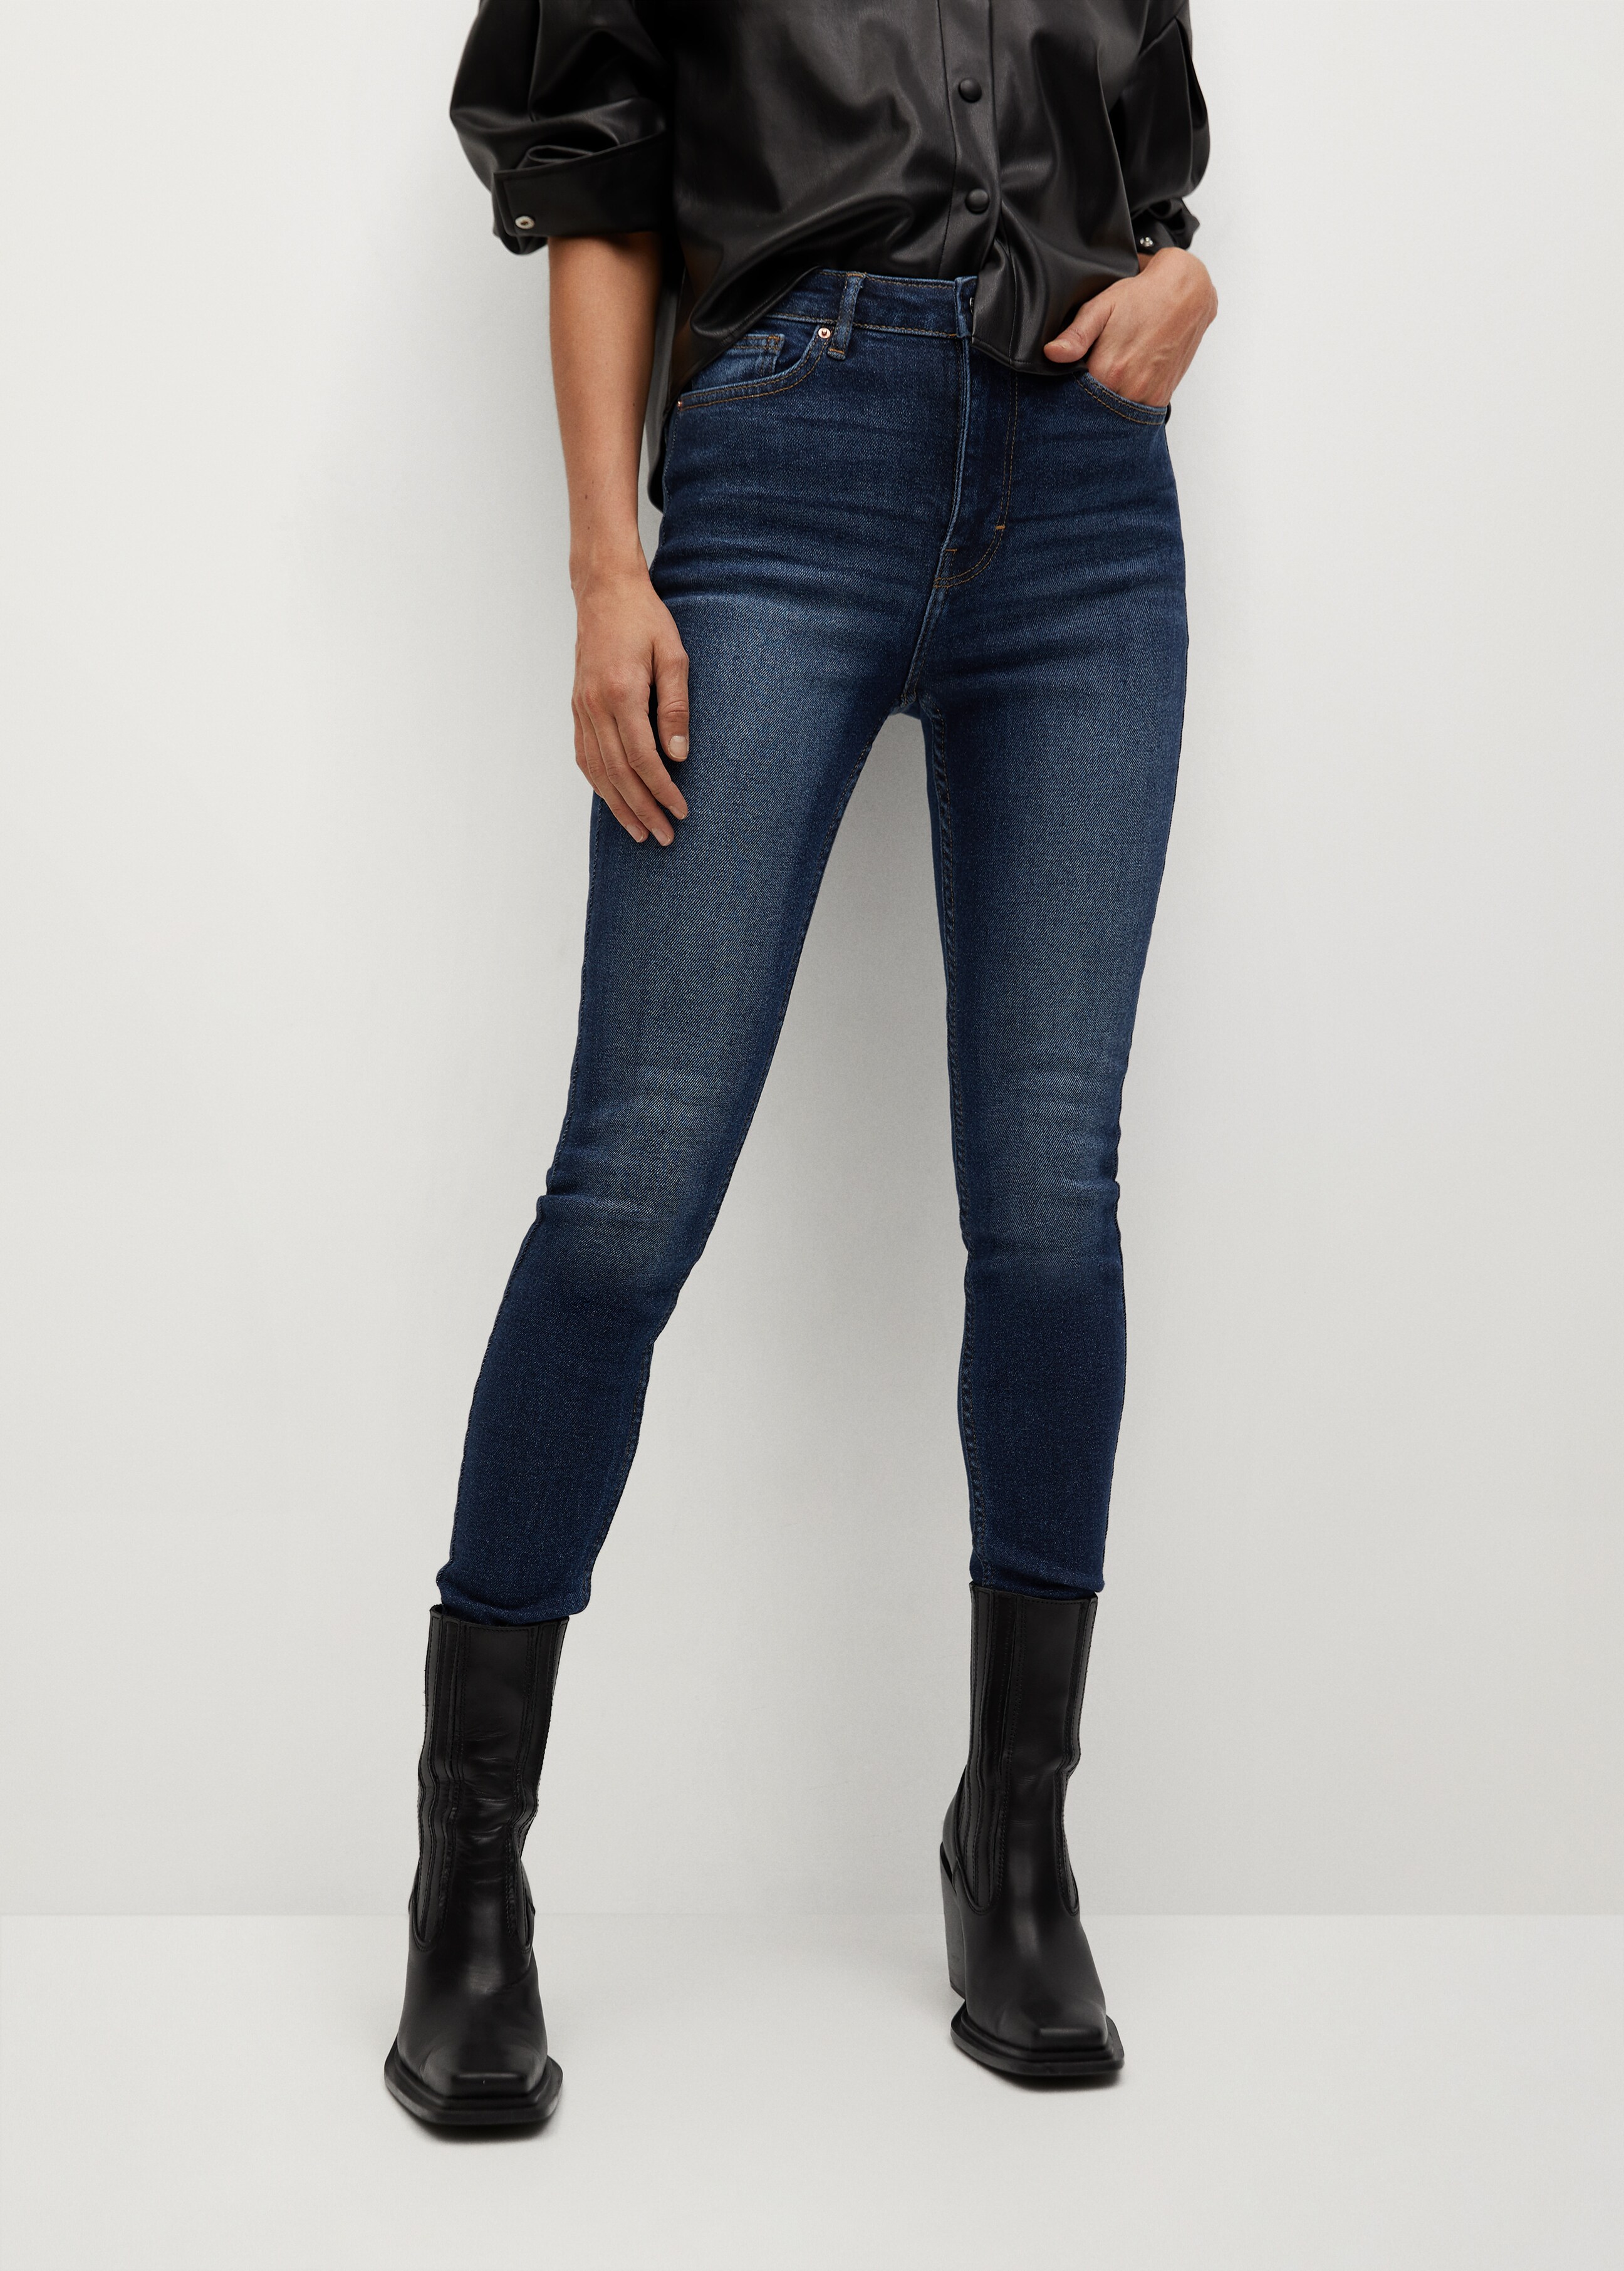 Soho high-waist skinny jeans - Medium plane